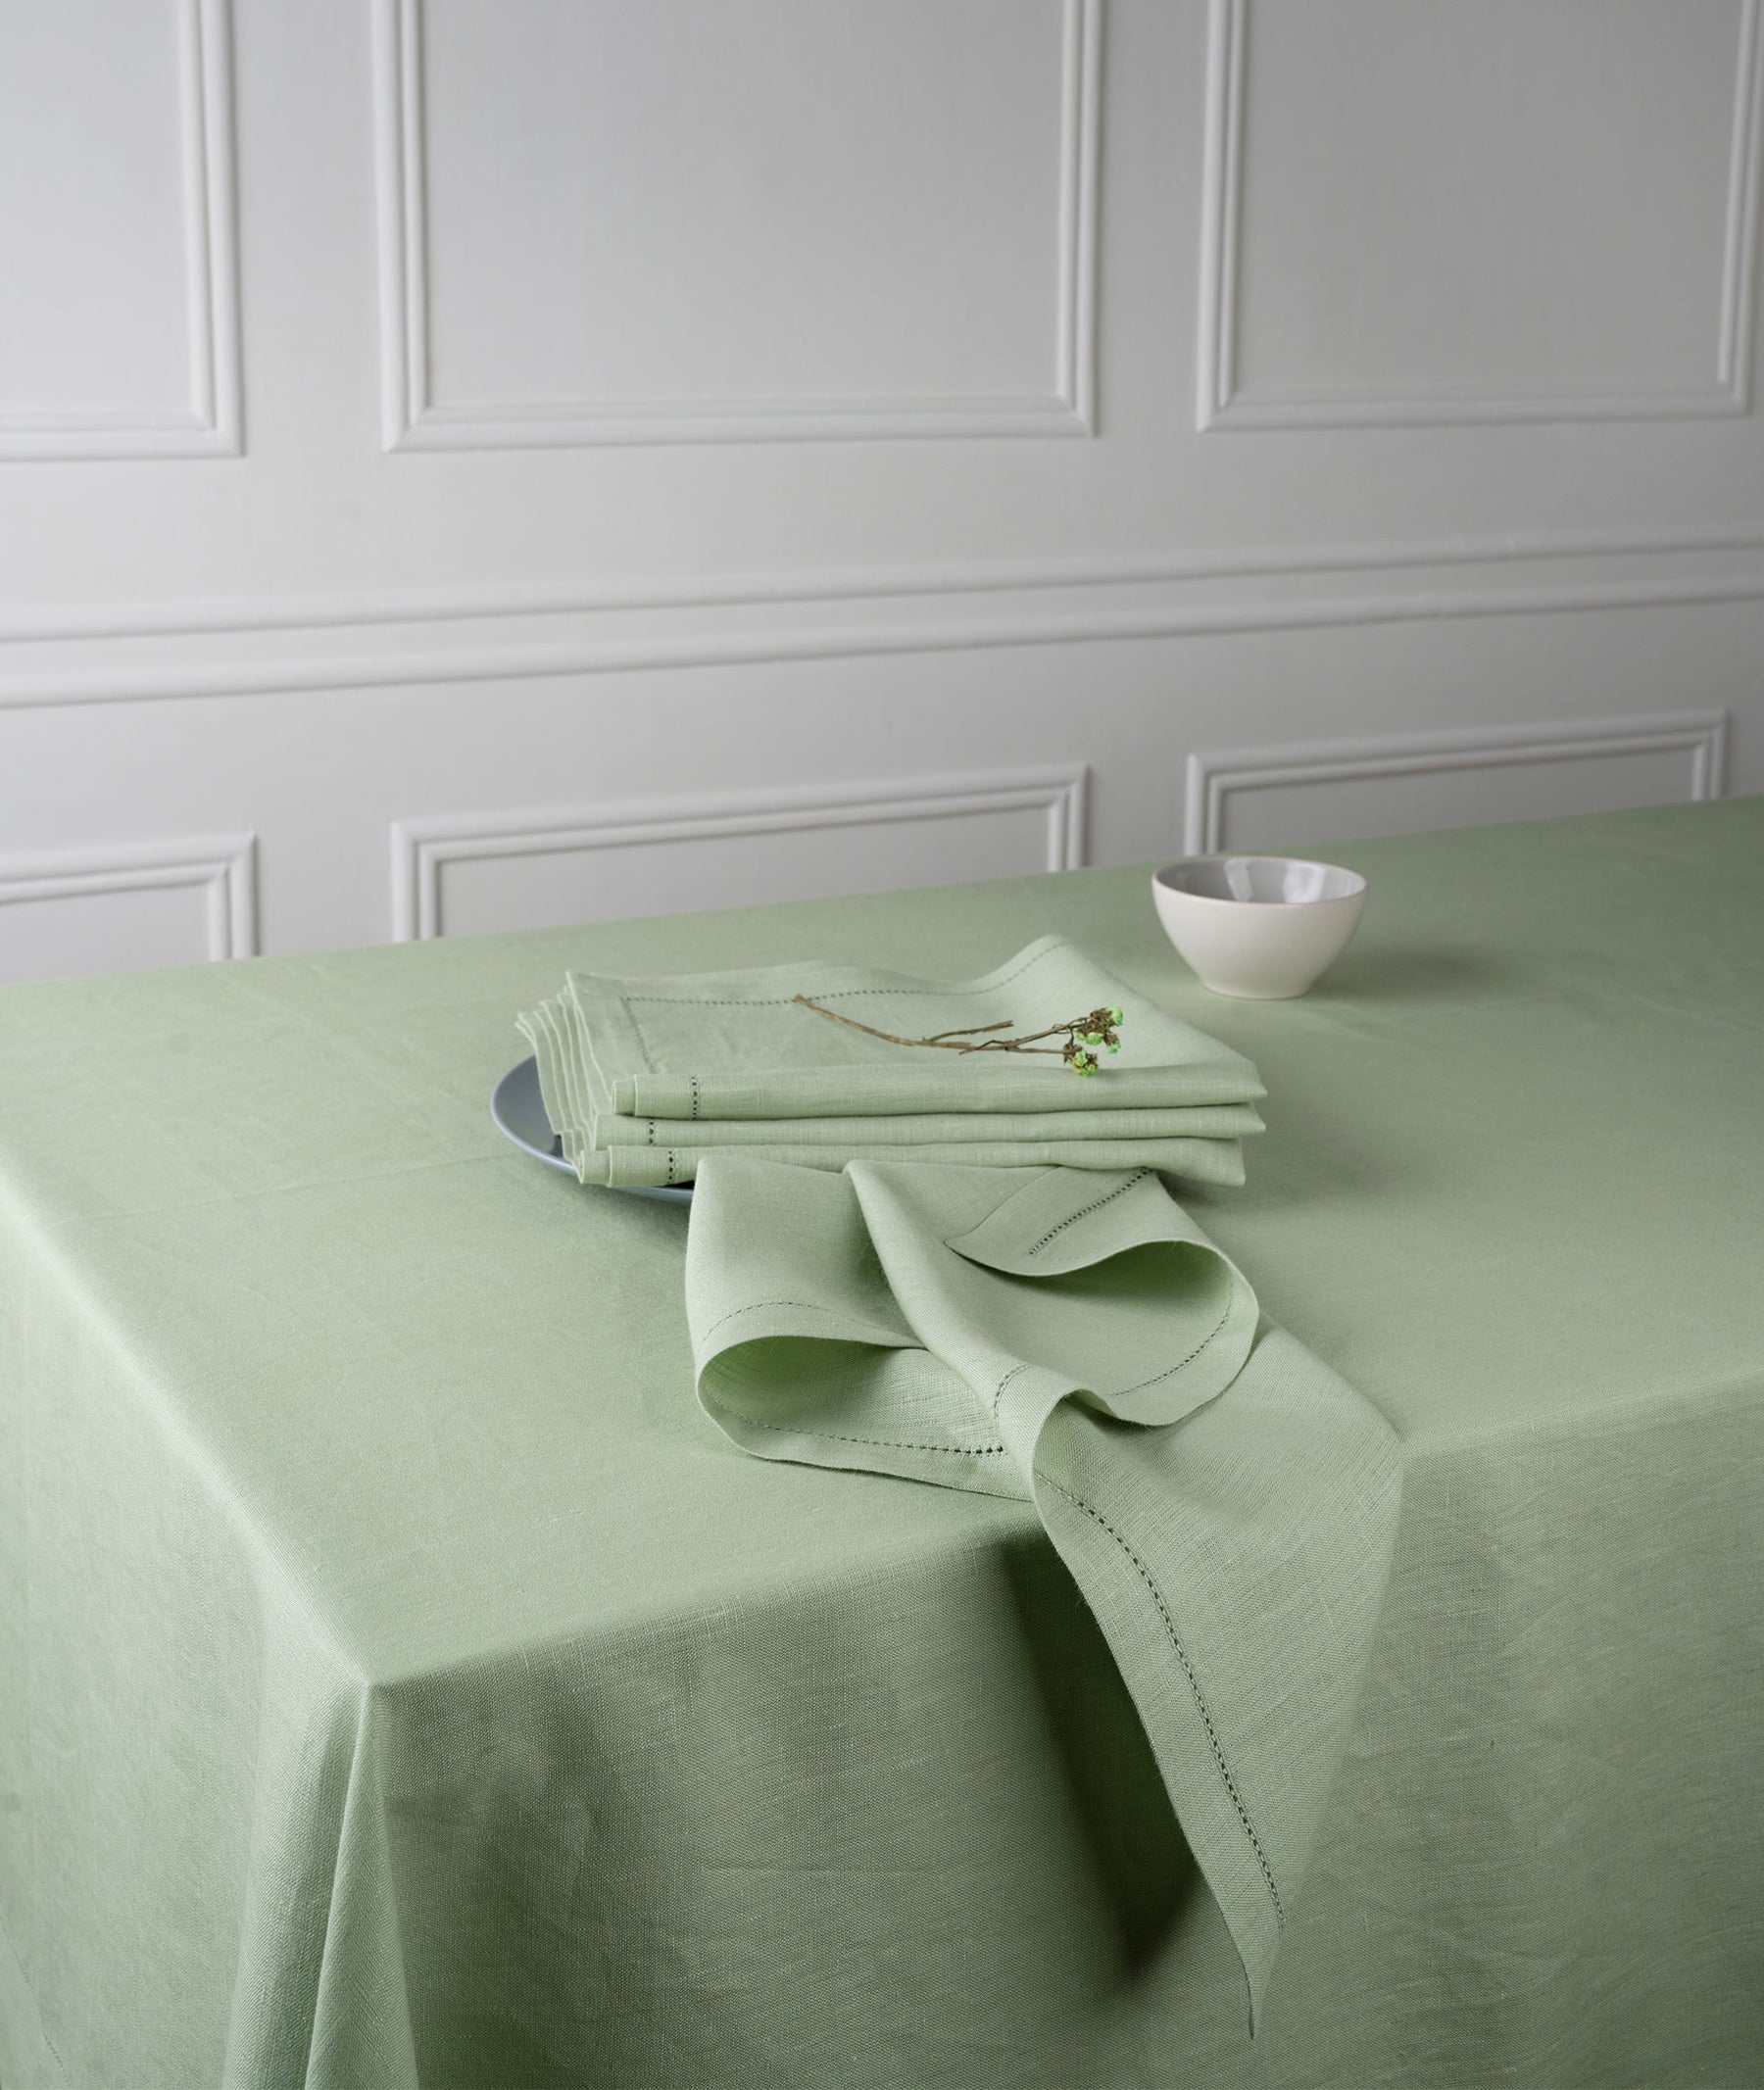 Sage Green Linen Tablecloth - Hemstitch